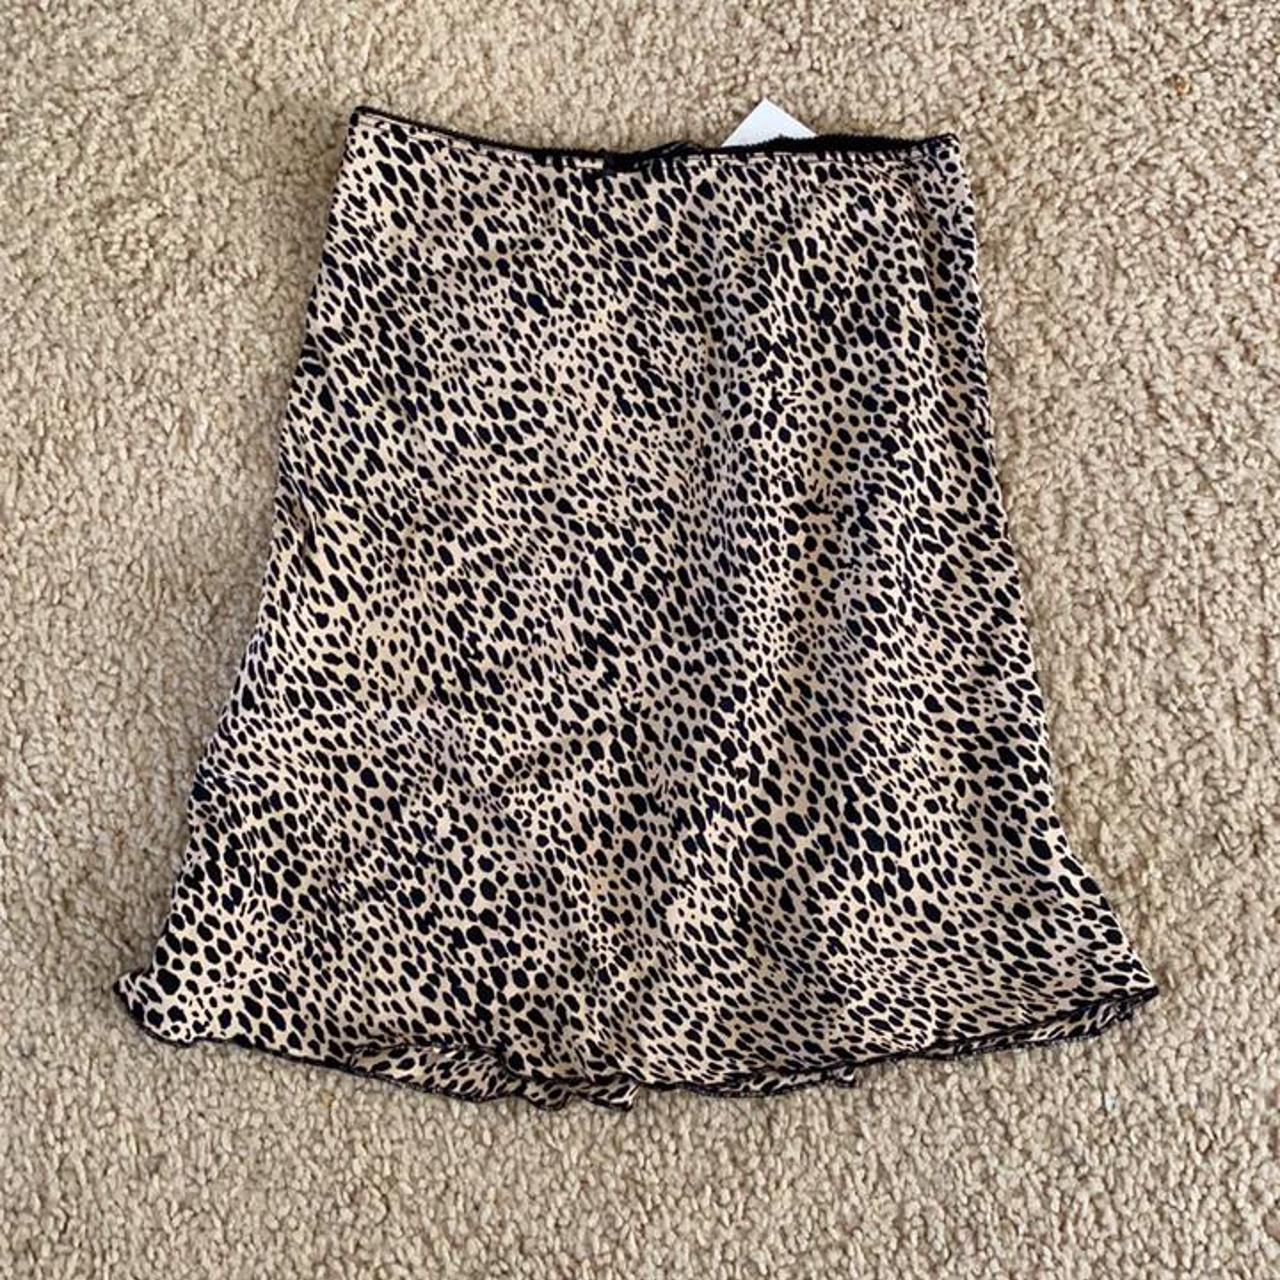 Brandy Melville sephira leopard cheetah skirt - Depop